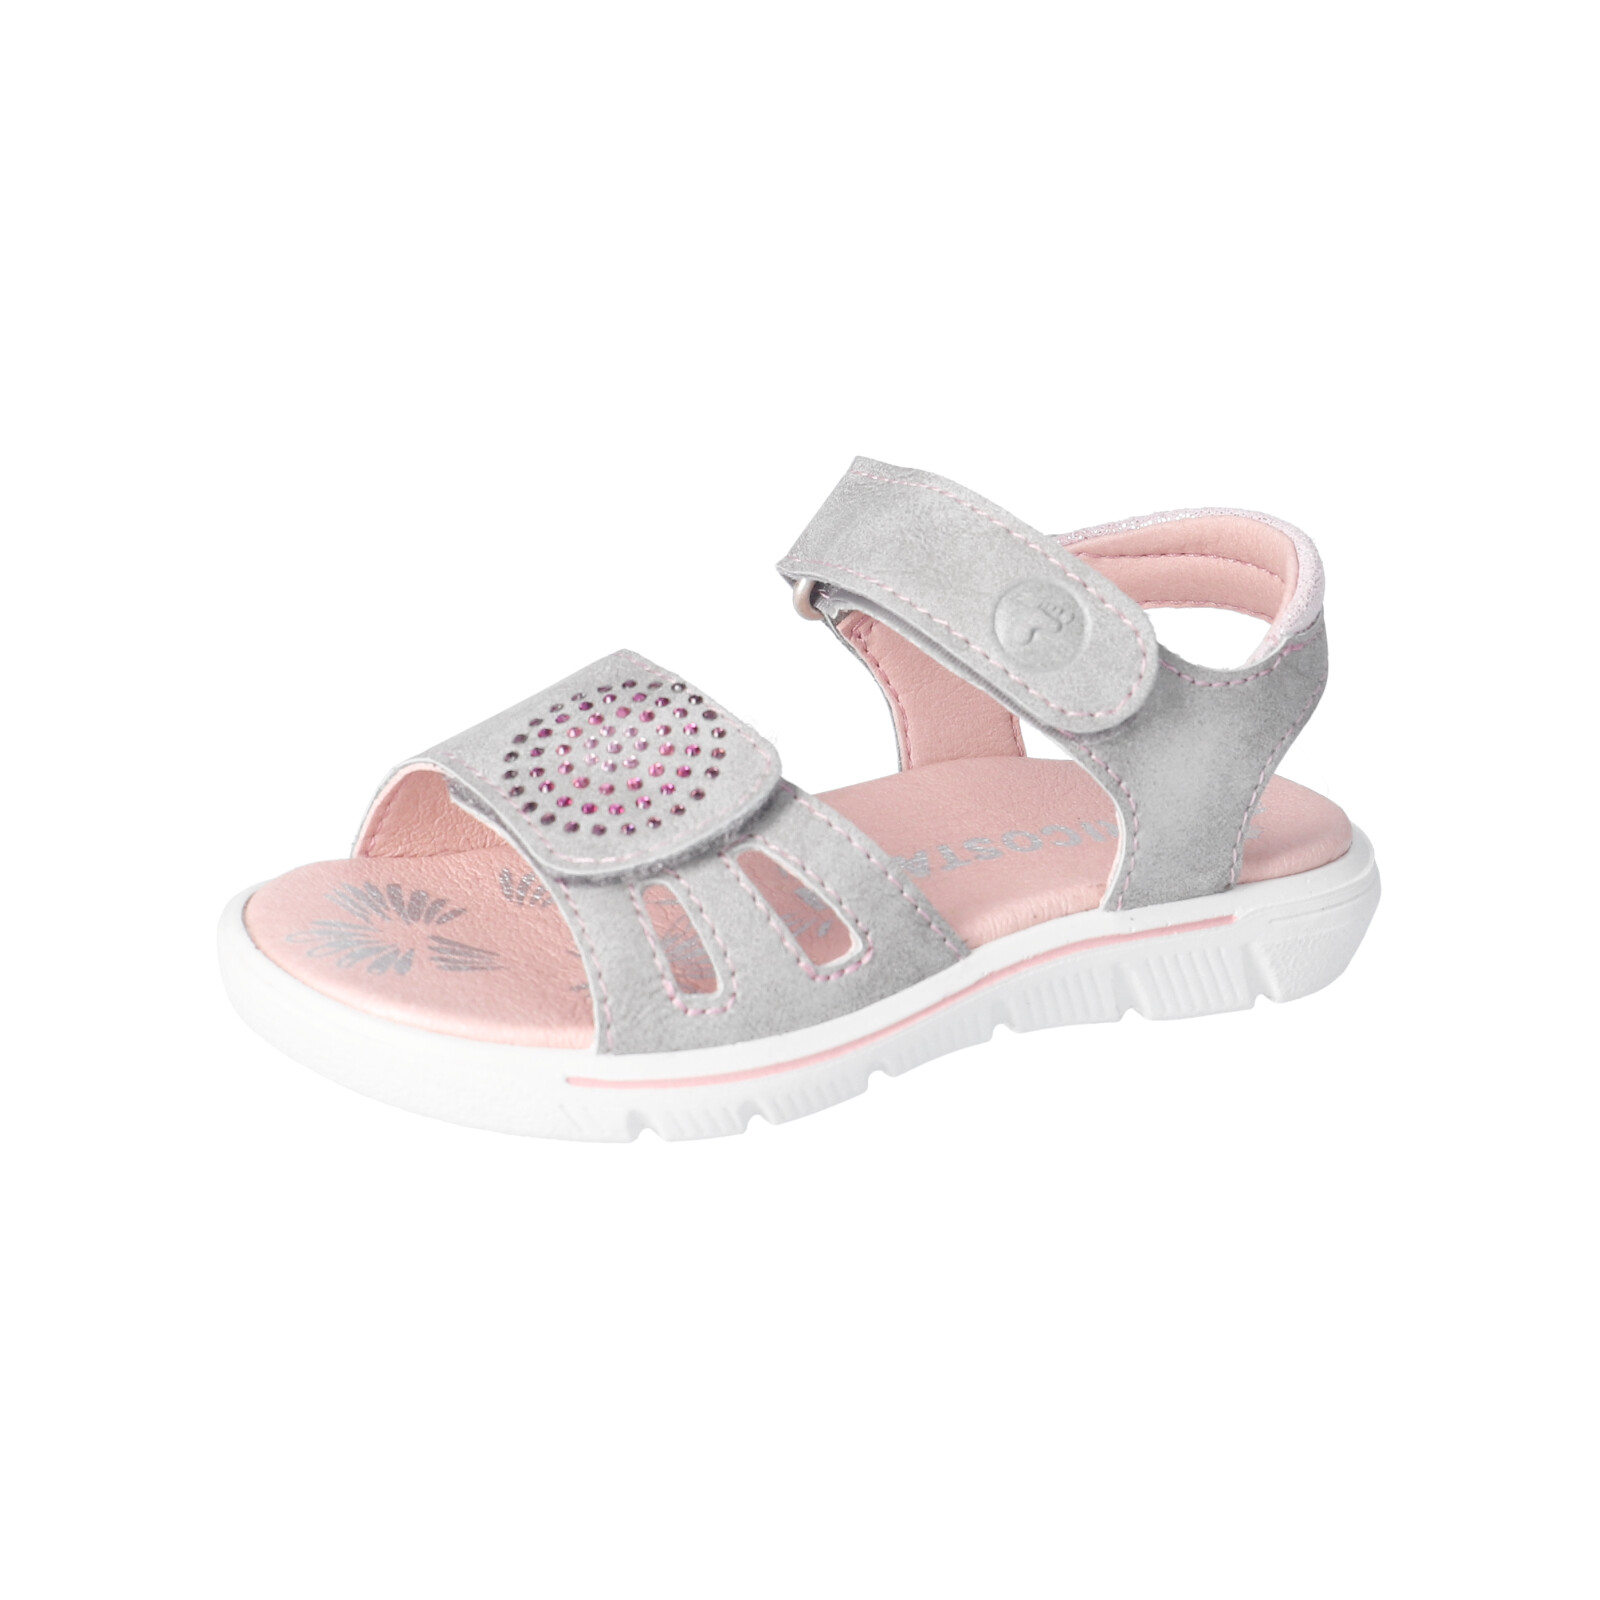 aktive Kids Schuhe Qualität Komfort & RICOSTA für -